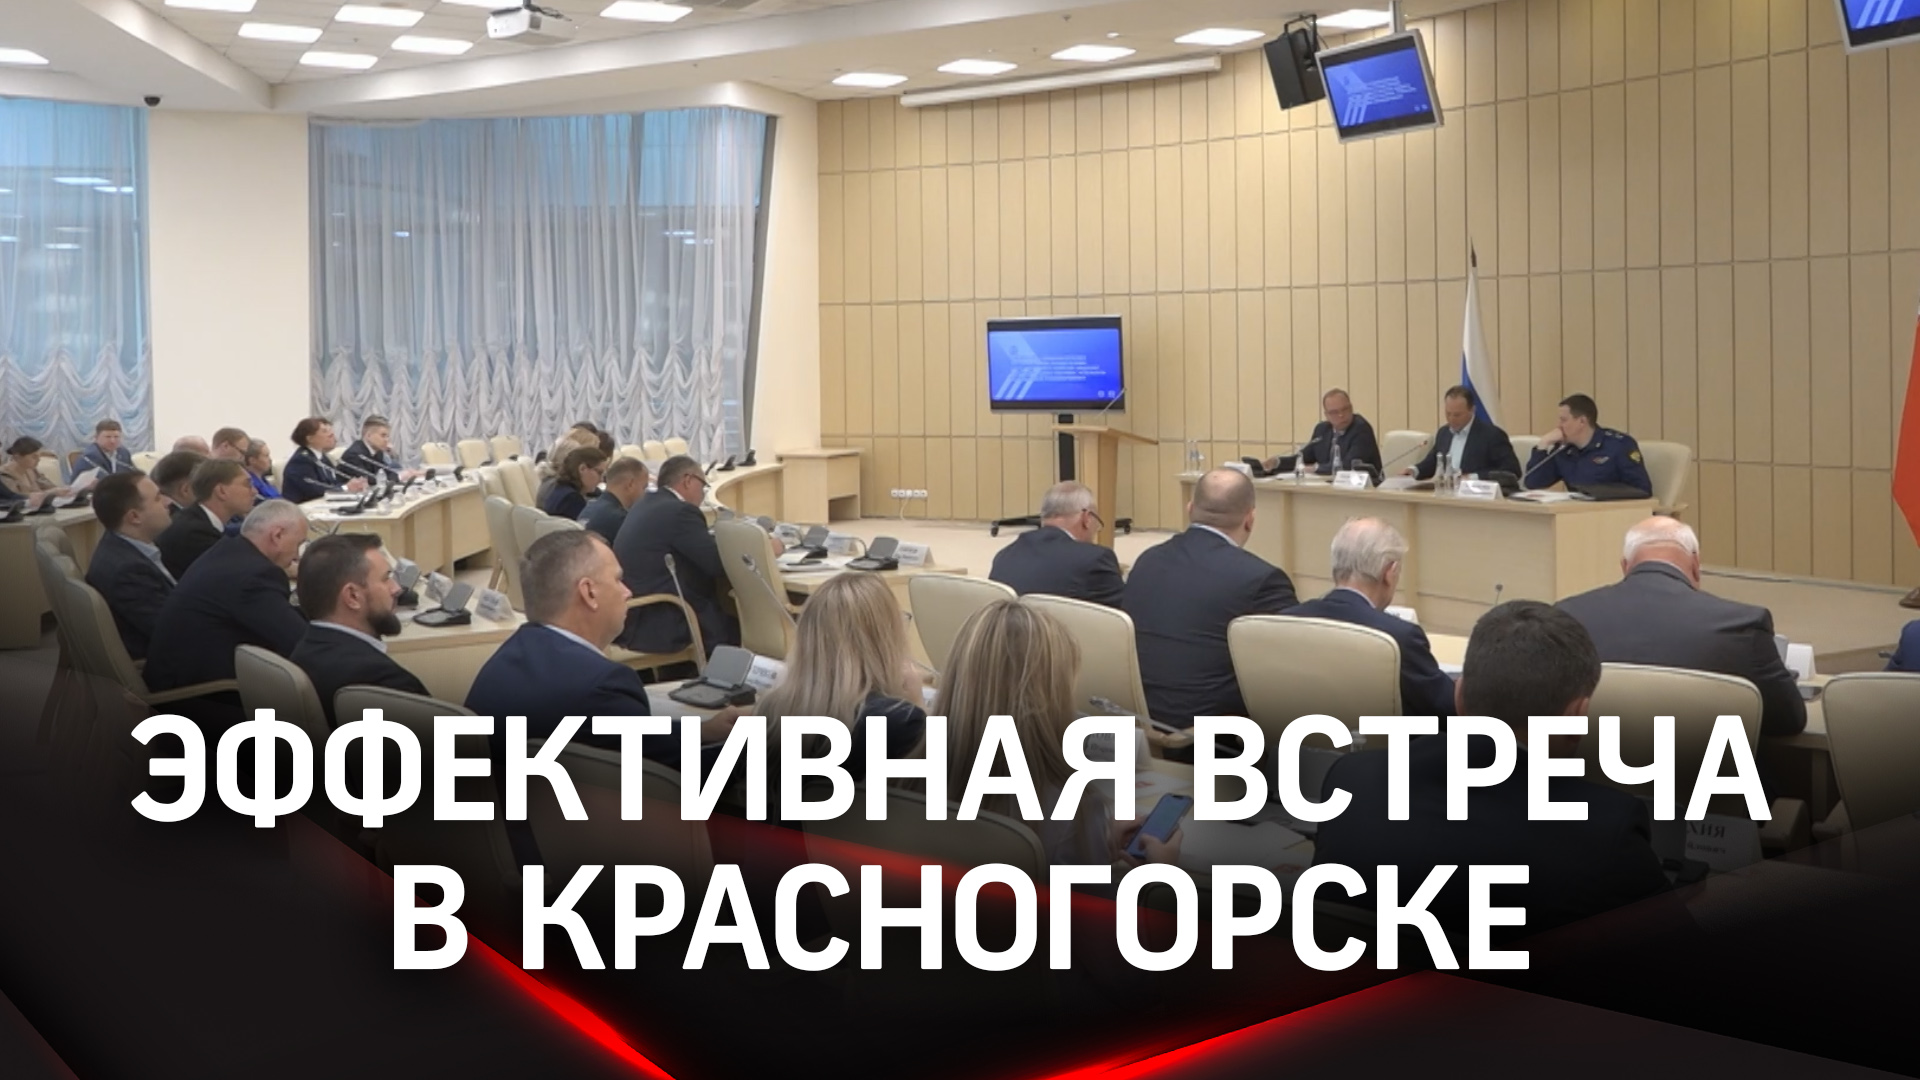 В Красногорске прошла встреча предпринимателей и представителей прокуратуры Московской области